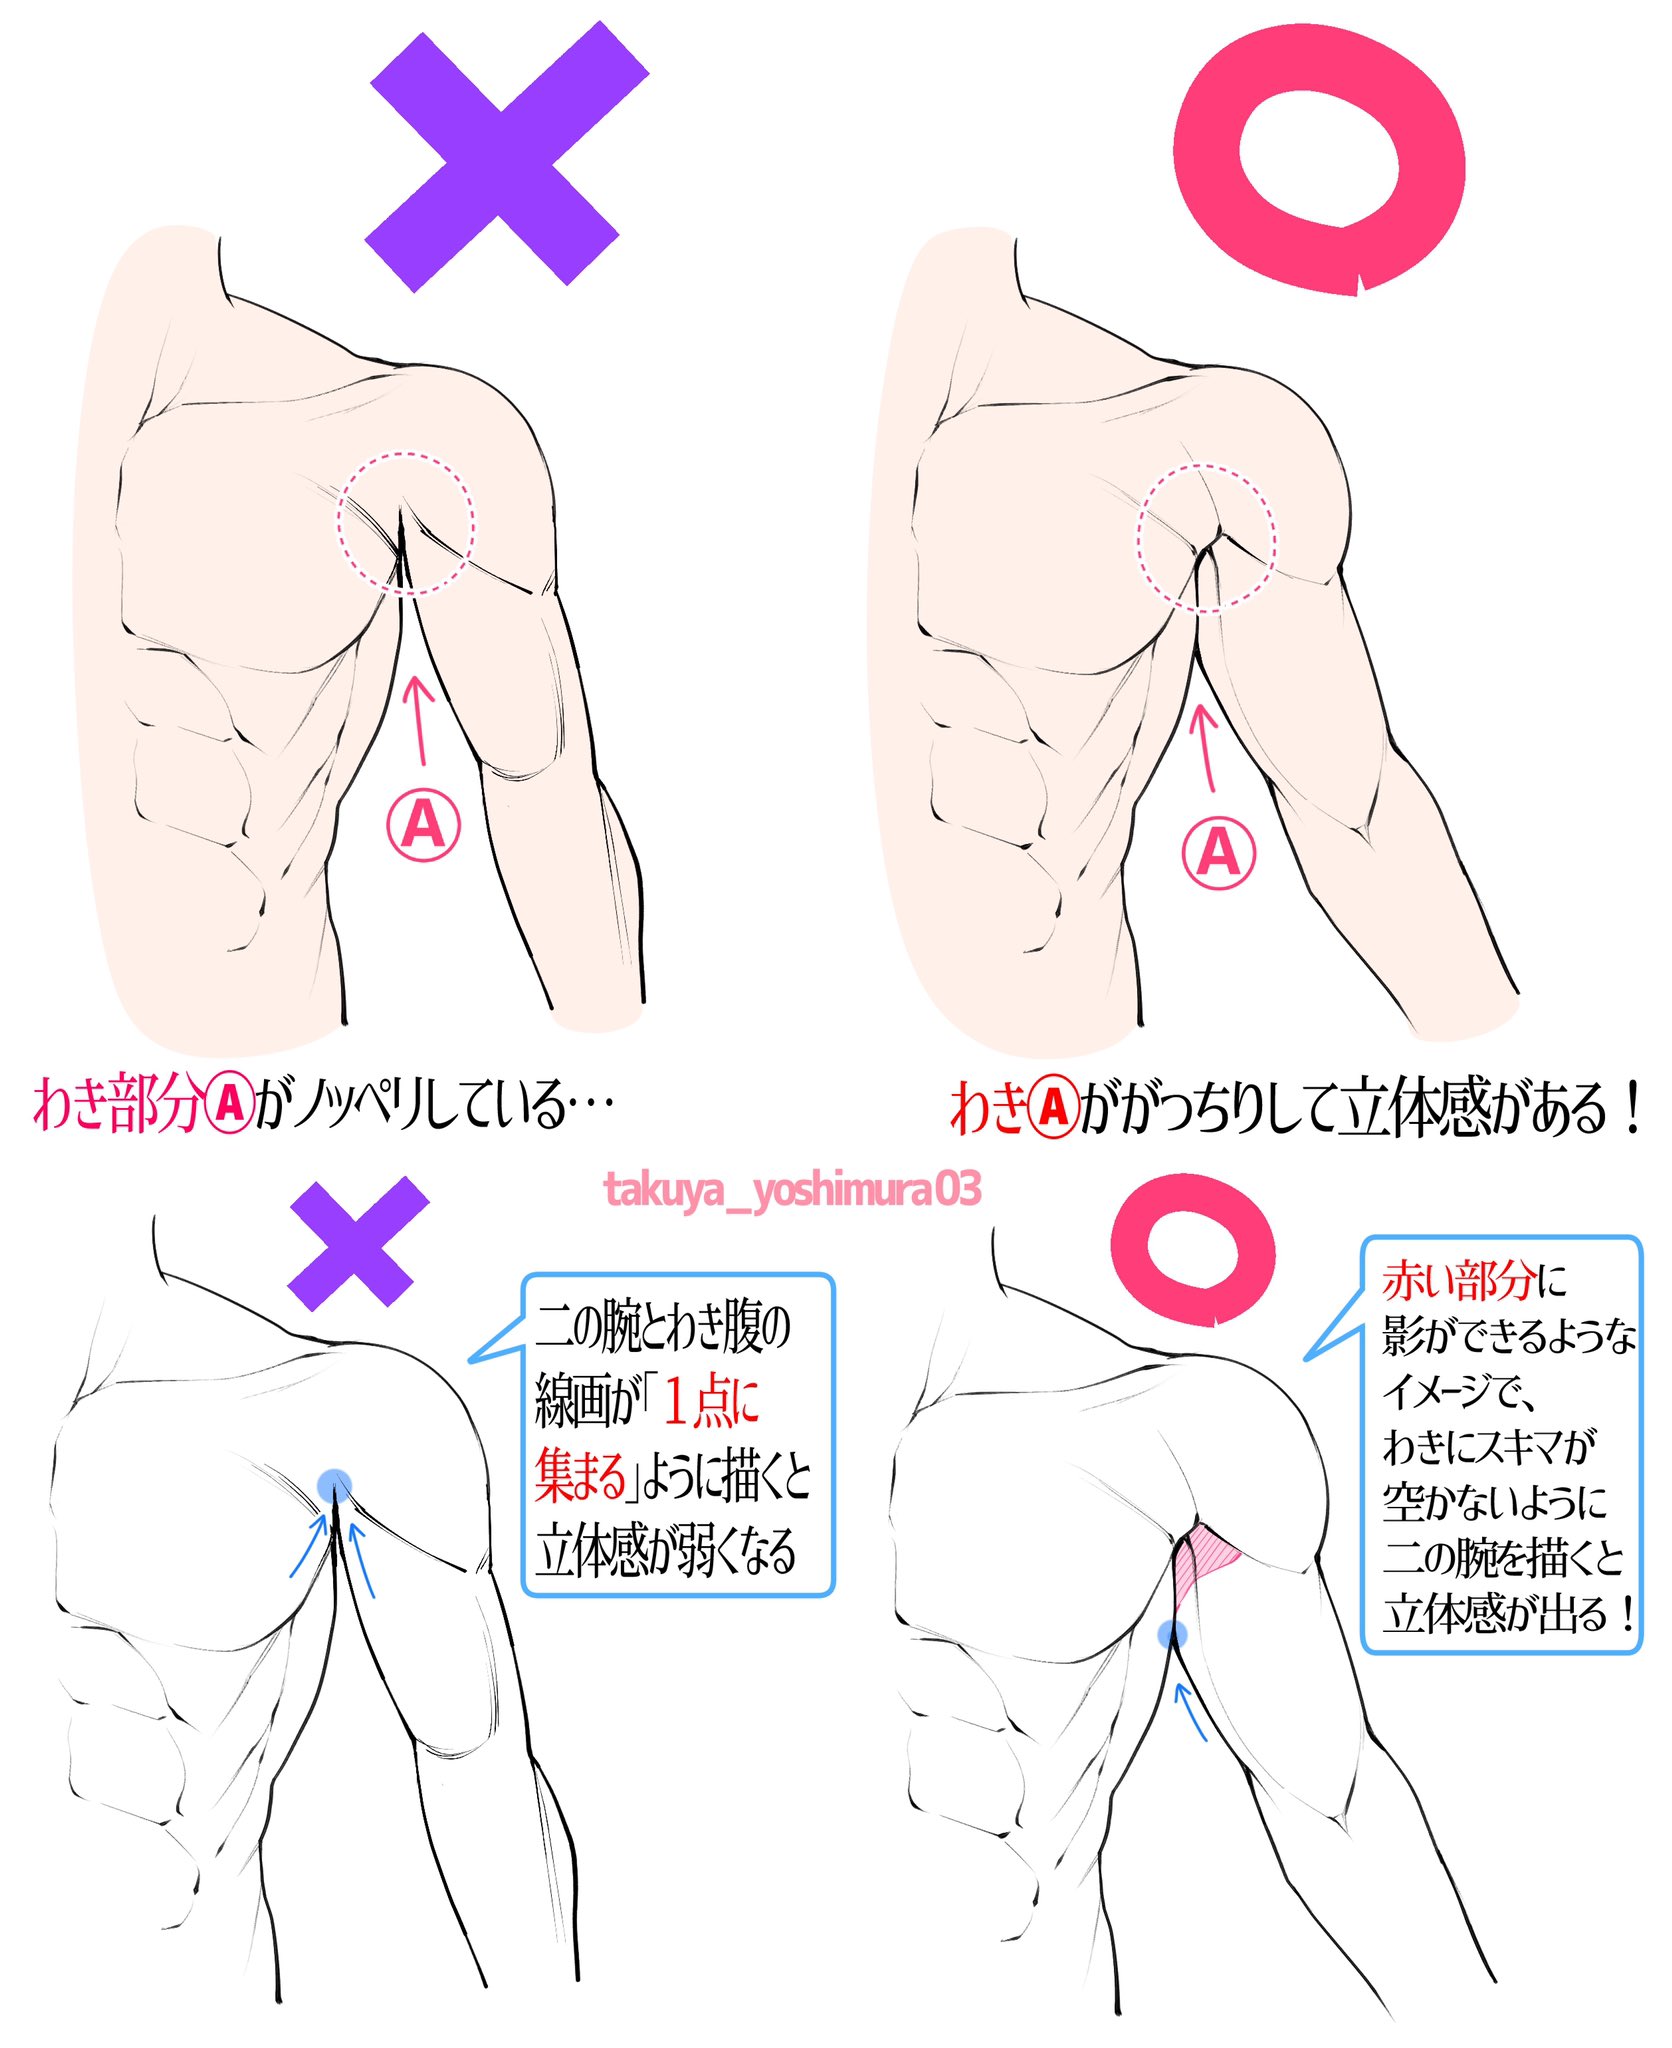 吉村拓也 イラスト講座 男性のワキの描き方 筋肉編 立体感が無くなってしまう例 立体感がかなりアップする例 T Co Dmopu0nazo Twitter